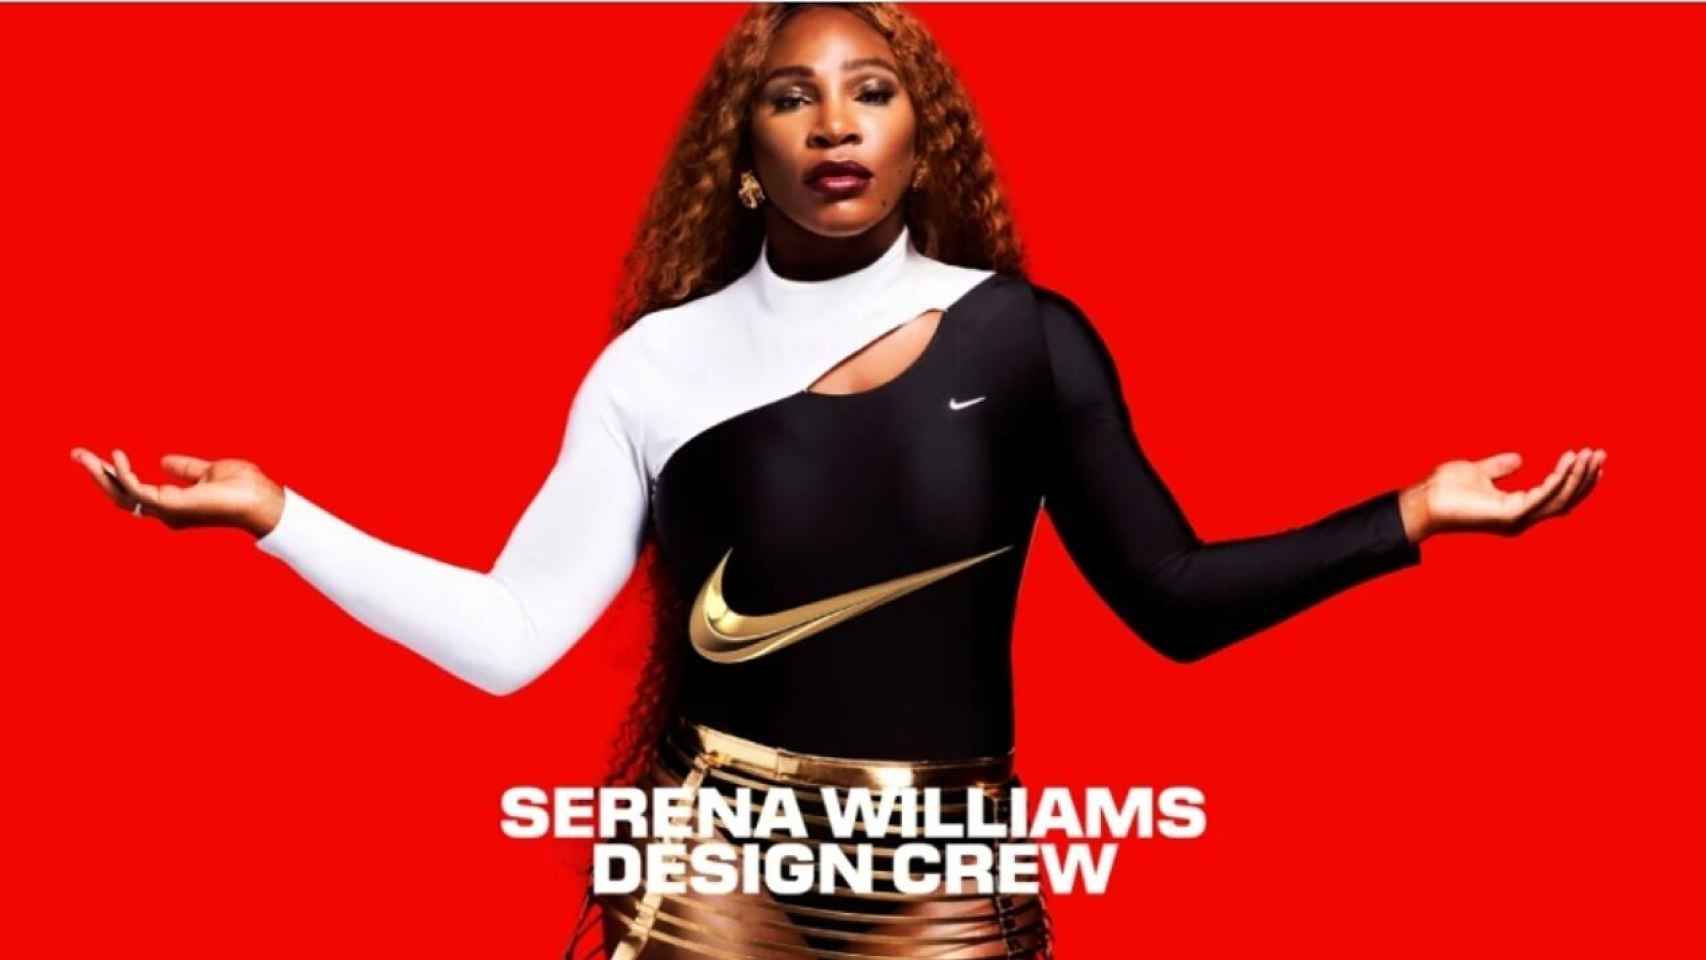 Serena Williams, en el anuncio de la colección SWDC de Nike